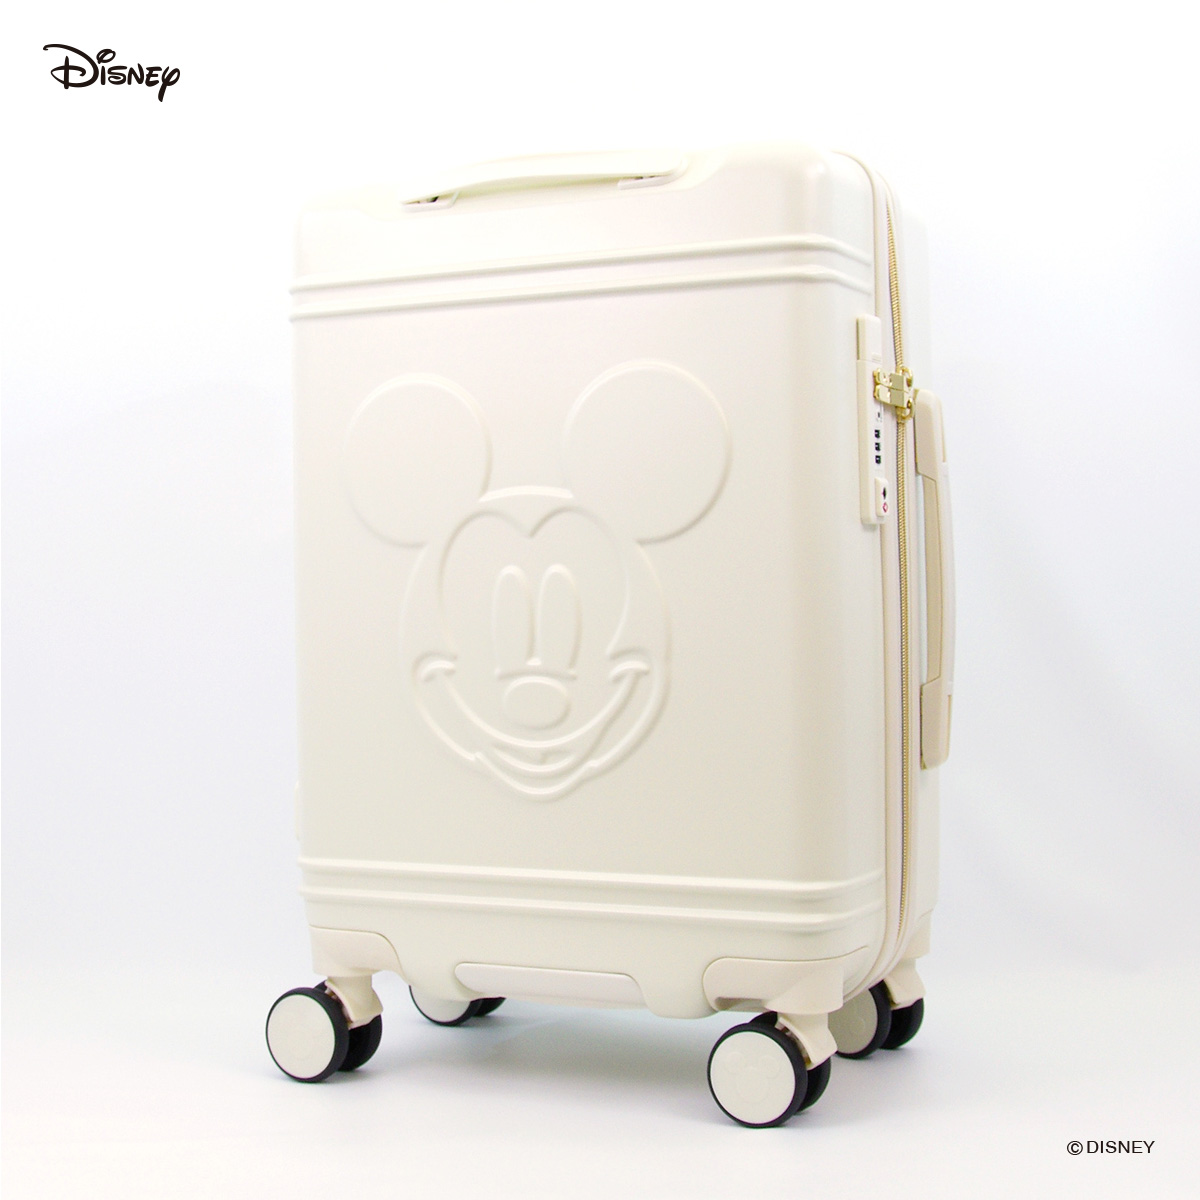 冬季限定 ミッキーマウスのデザインのスーツケースがヴィレヴァンオンラインに新登場 ヴィレッジヴァンガードのプレスリリース